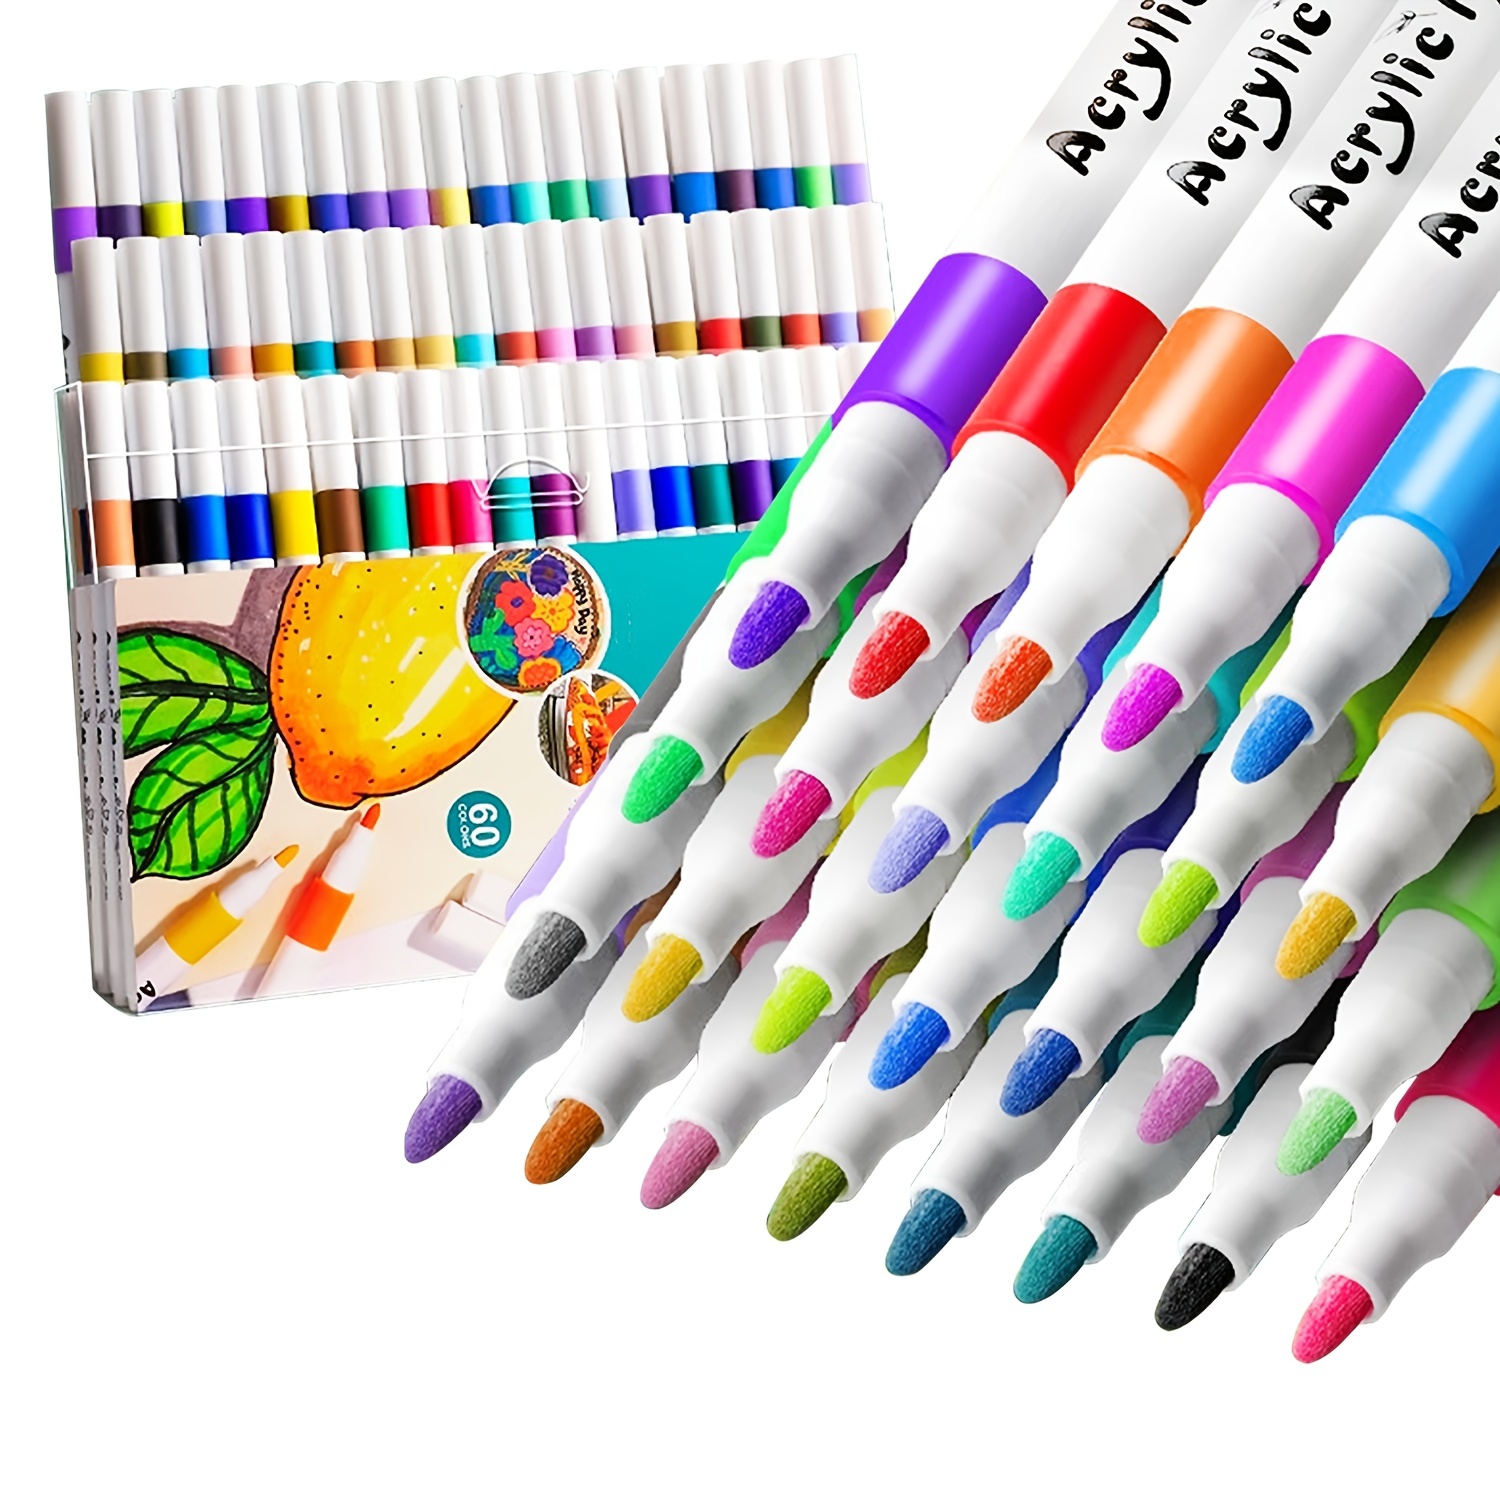  Rotuladores de alcohol de 80 colores, marcadores de doble punta  de color permanente para principiantes y pintores profesionales, muy  adecuados para dibujar, dibujar y colorear, colores fáciles de mezclar,  caja de